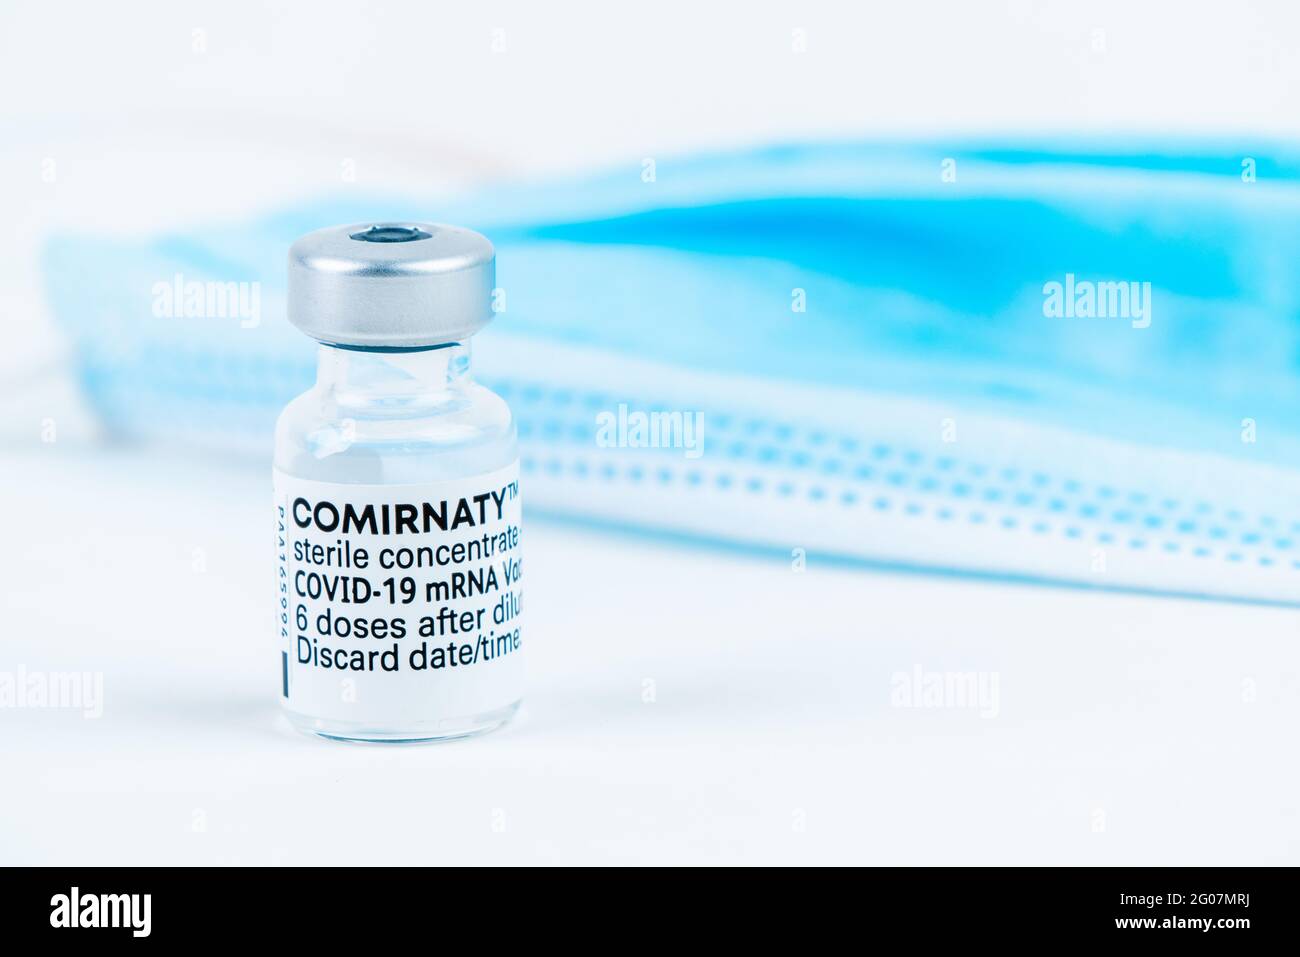 Celadna, Czechia - 05.30.2021: Ampoule de Comirnaty vaccin par Pfizer sur fond blanc, avec un masque bleu à côté Banque D'Images